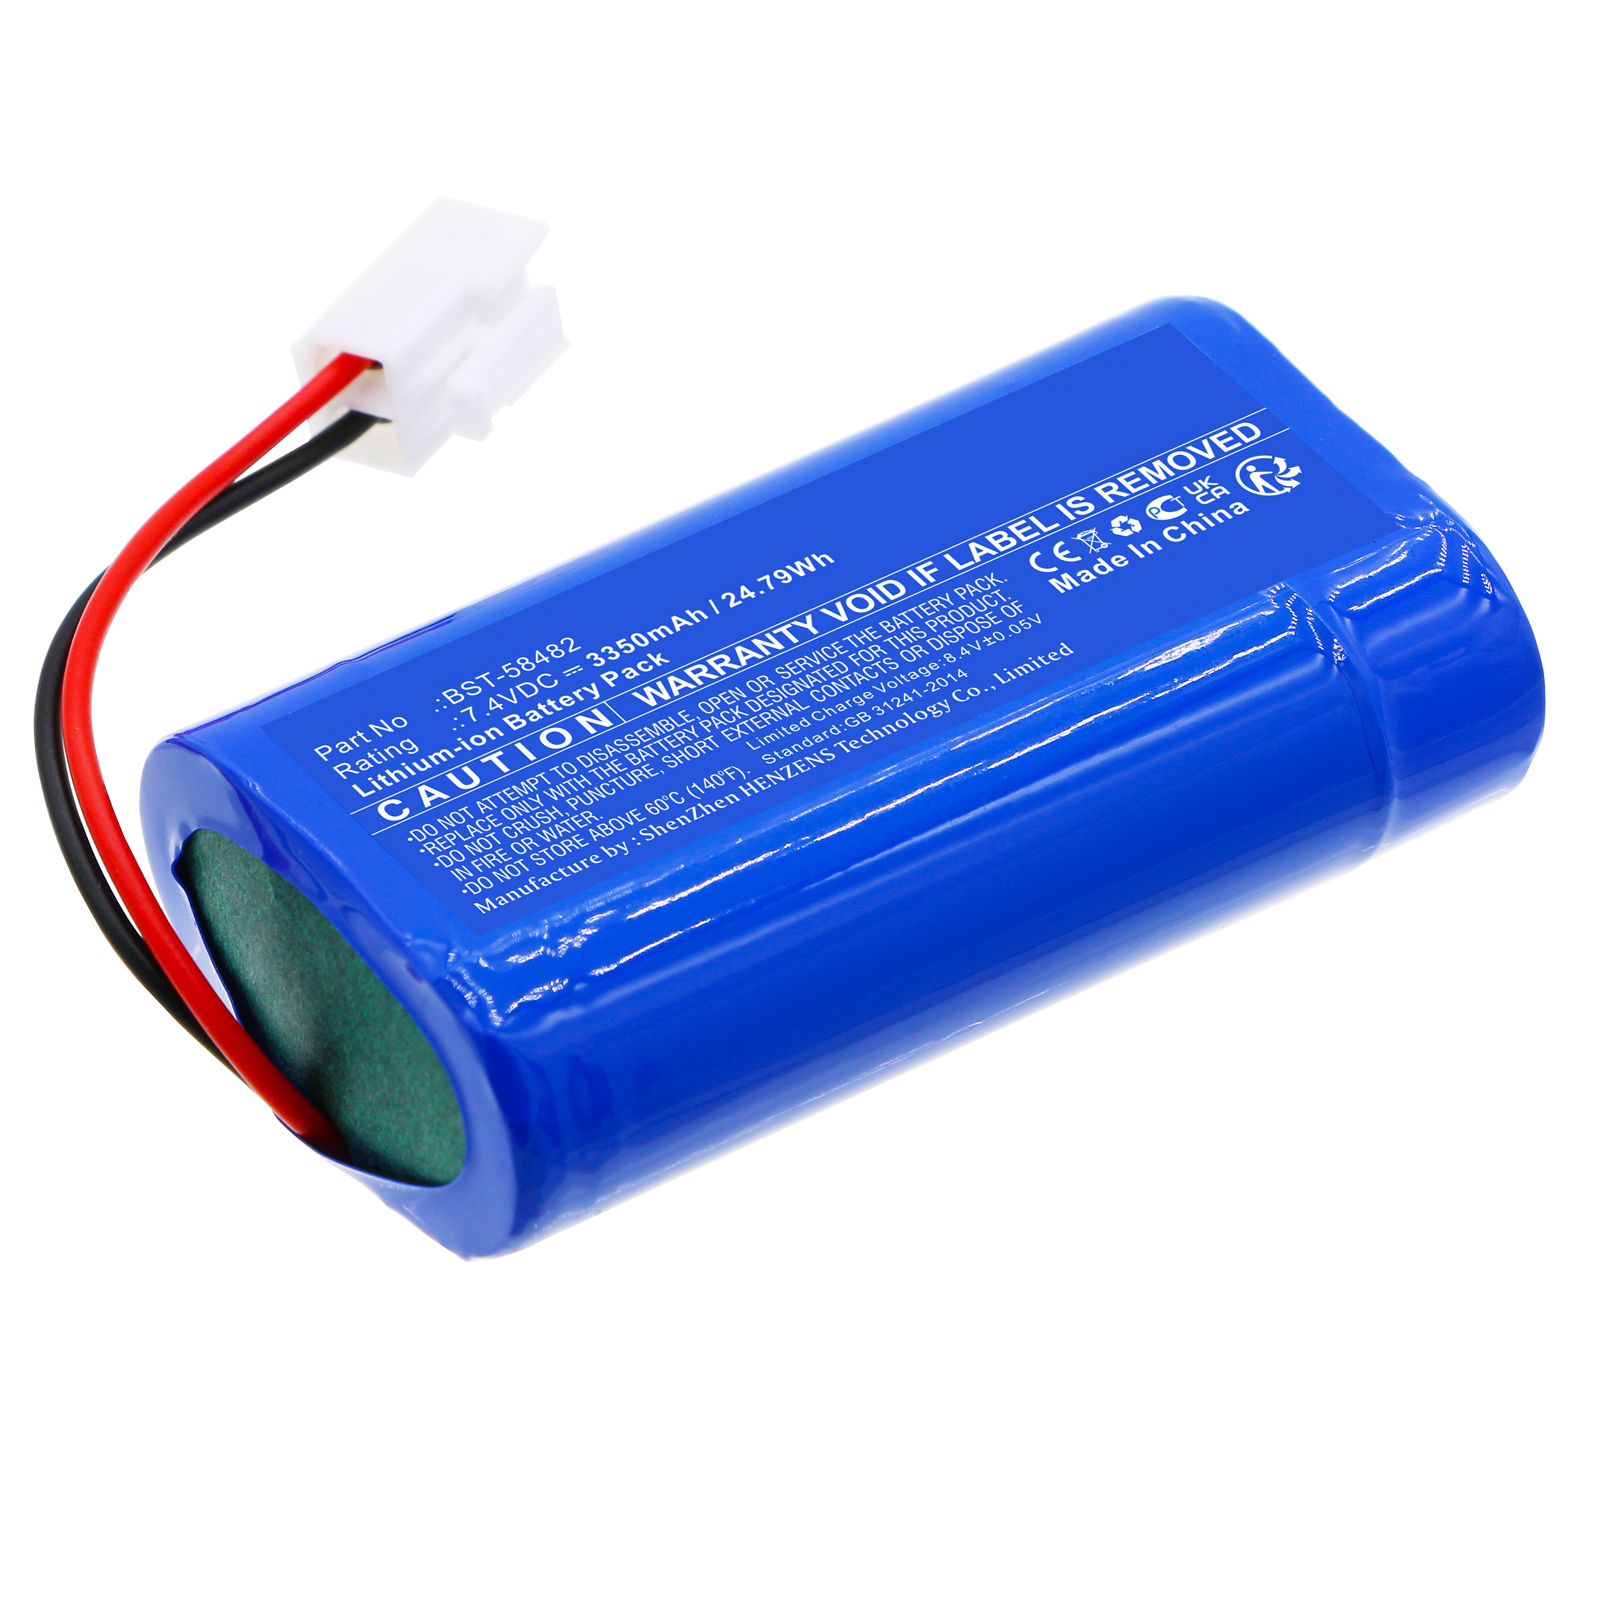 Synergy Digital Vacuum Cleaner Battery, Compatible with Bestway BST-58482 Vacuum Cleaner Battery (Li-ion, 7.4V, 3350mAh)